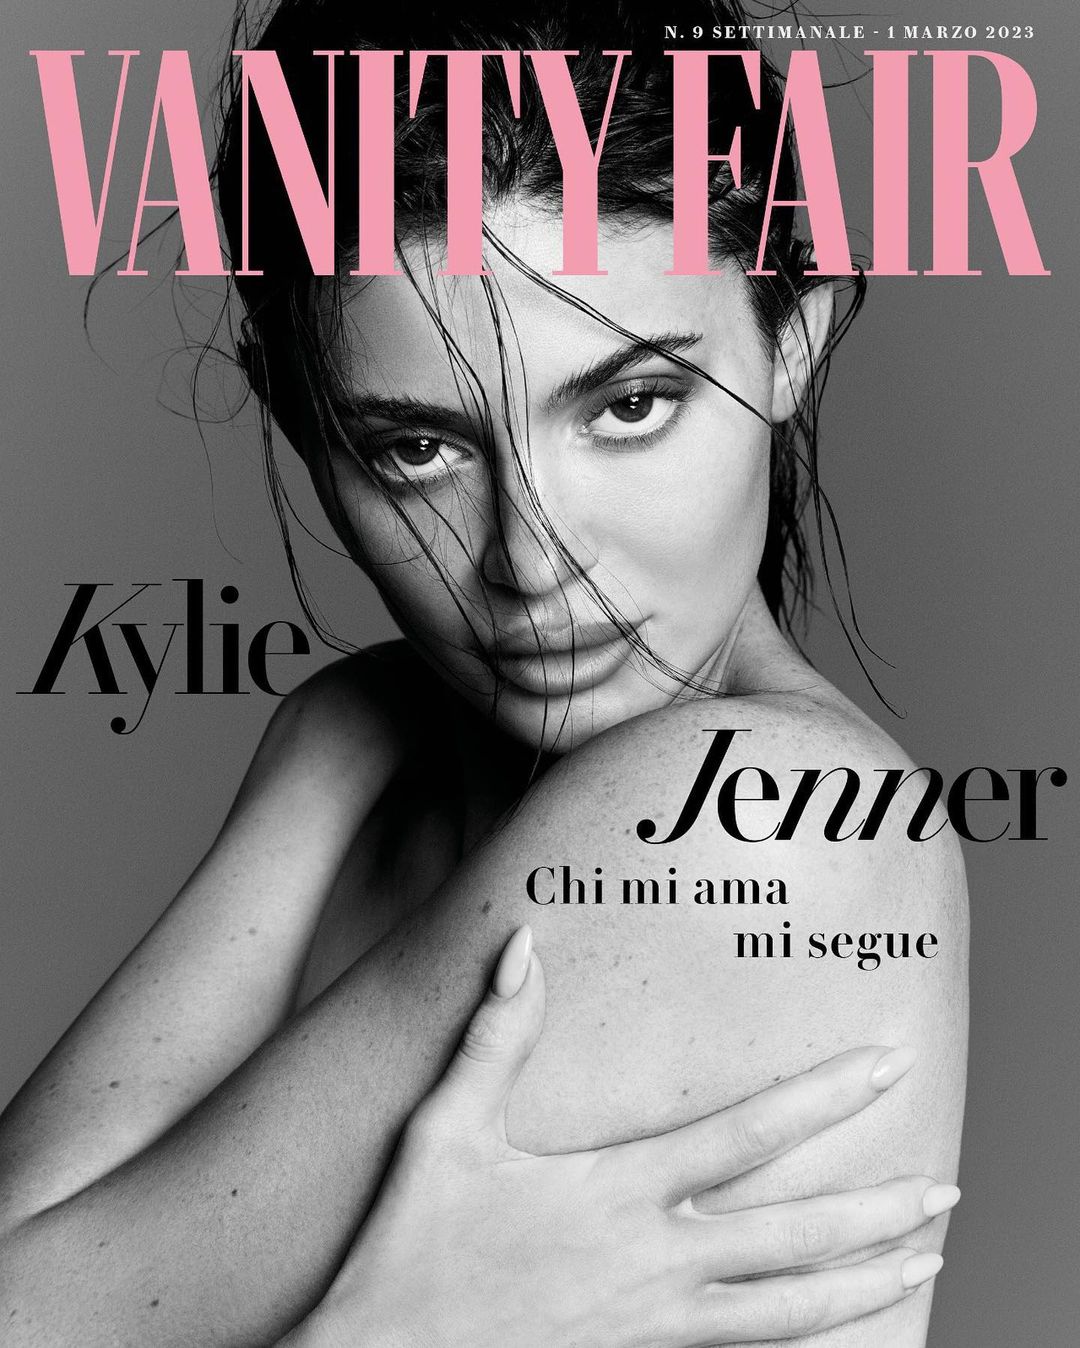 Kylie Jenner Cover Photo Shoot for Vanity Fair Magazine, Feb 2023